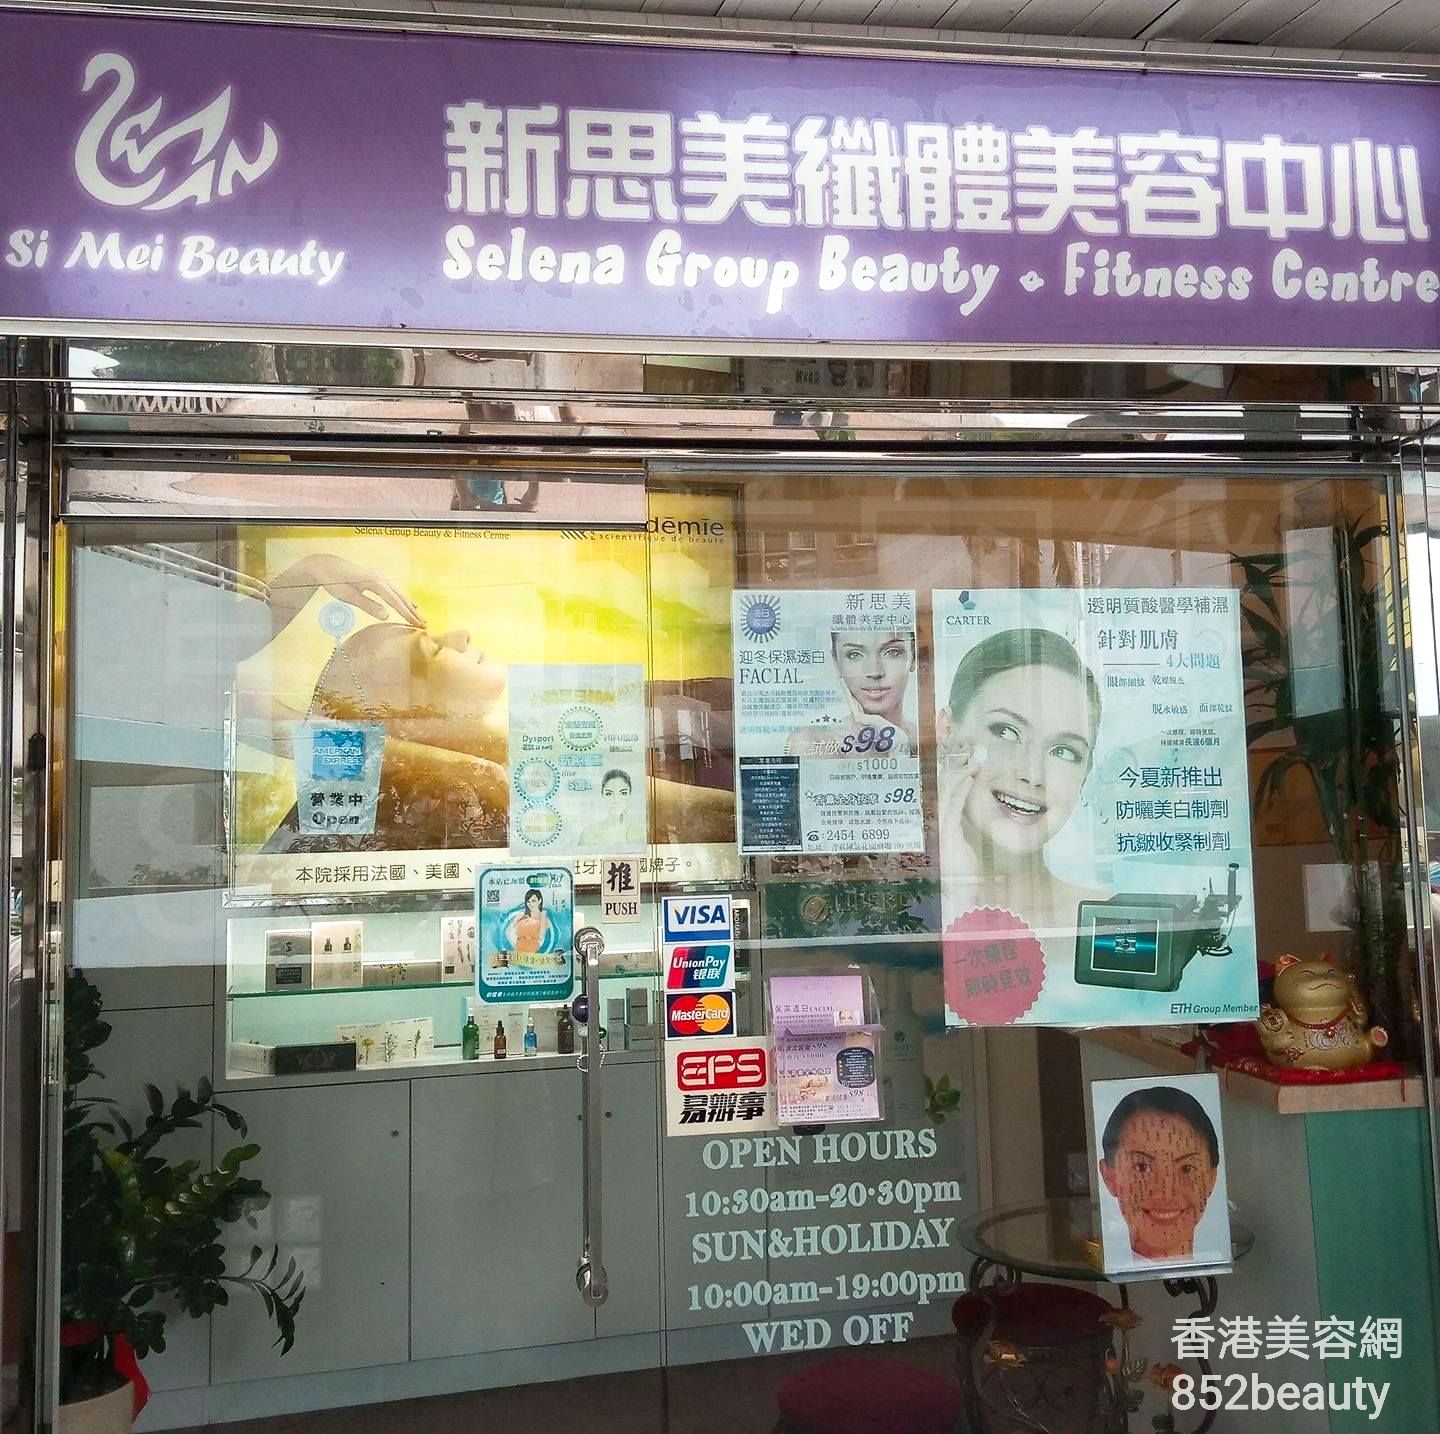 香港美容網 Hong Kong Beauty Salon 美容院 / 美容師: 新思美纖體美容中心